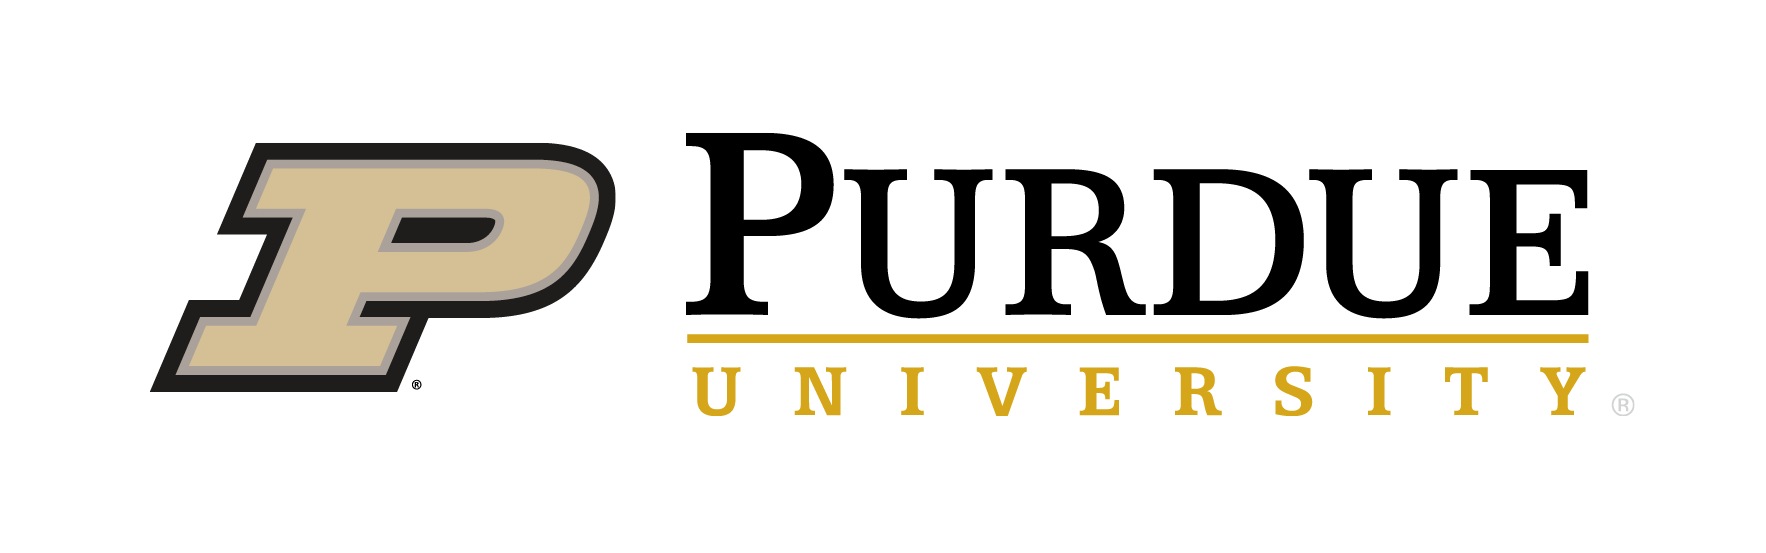 Purdue-University-1631100757.png